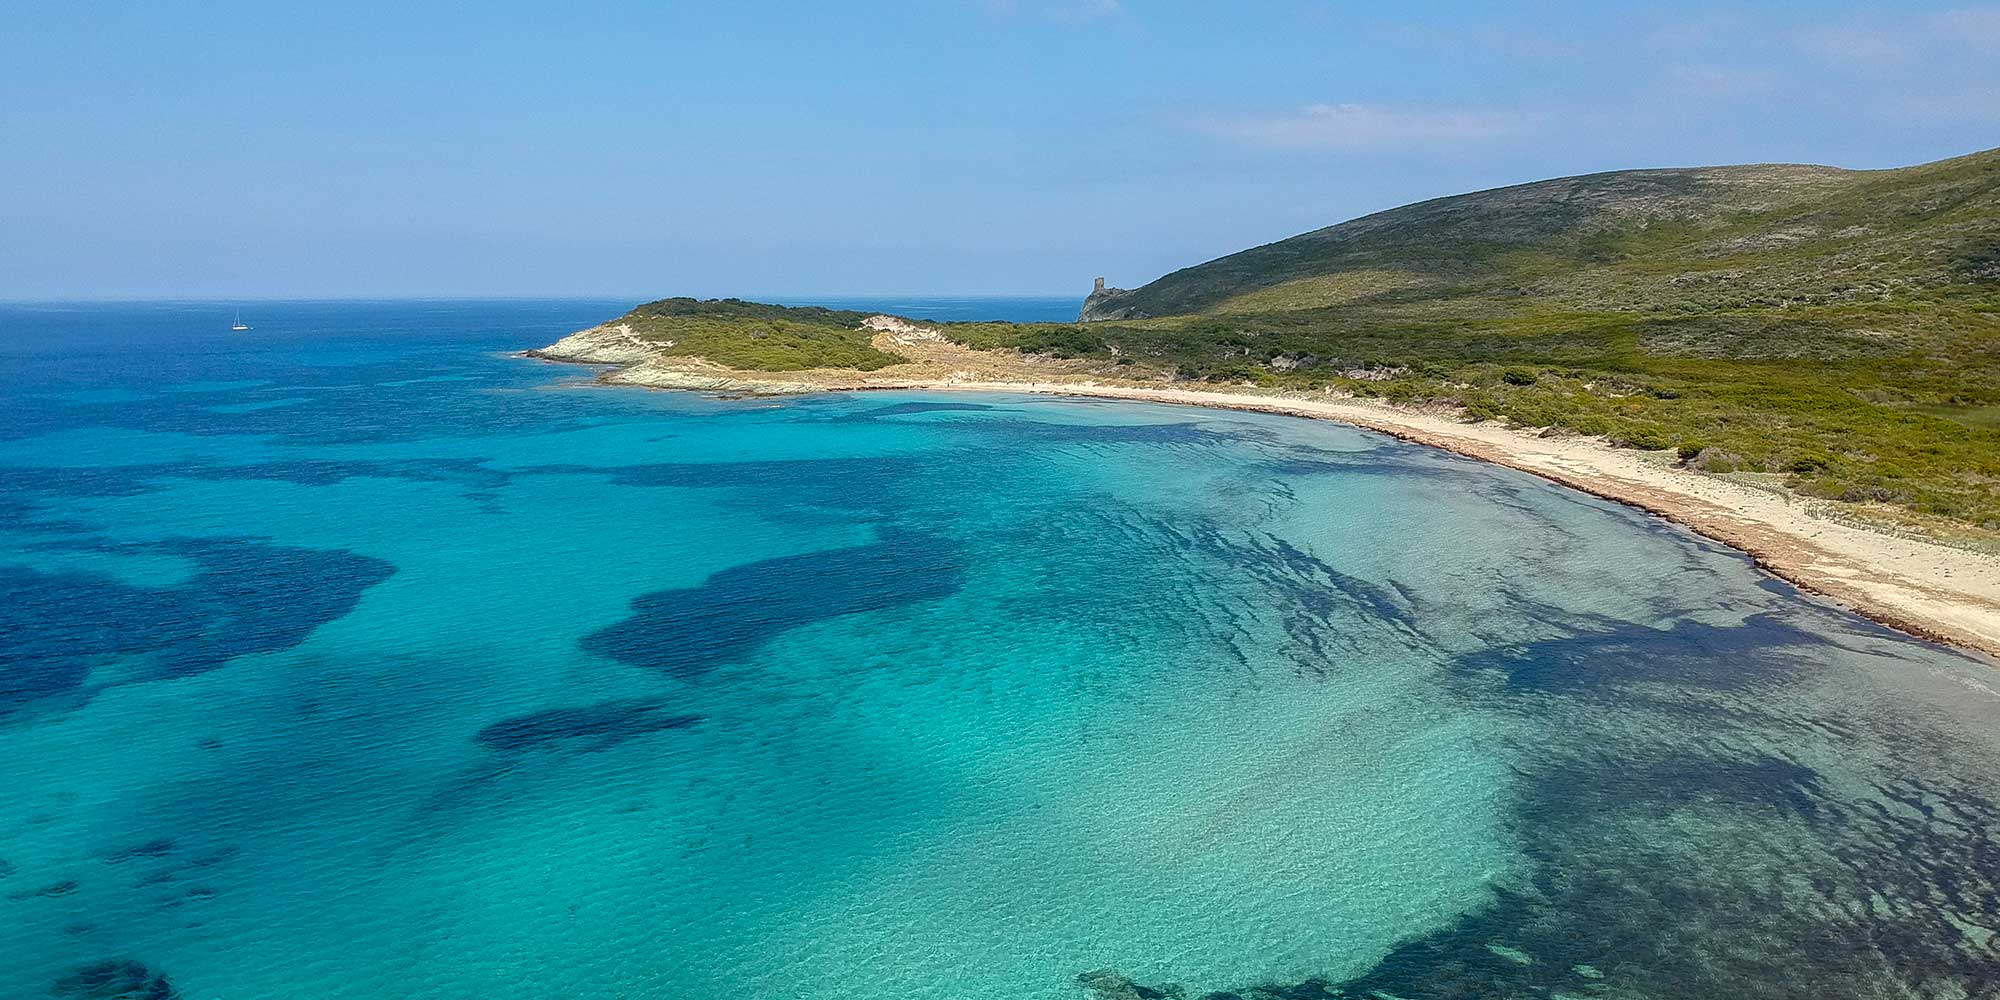 Location de vacances Villa à Barcaggio/Tollare pour 7 personnes dans le Cap Corse